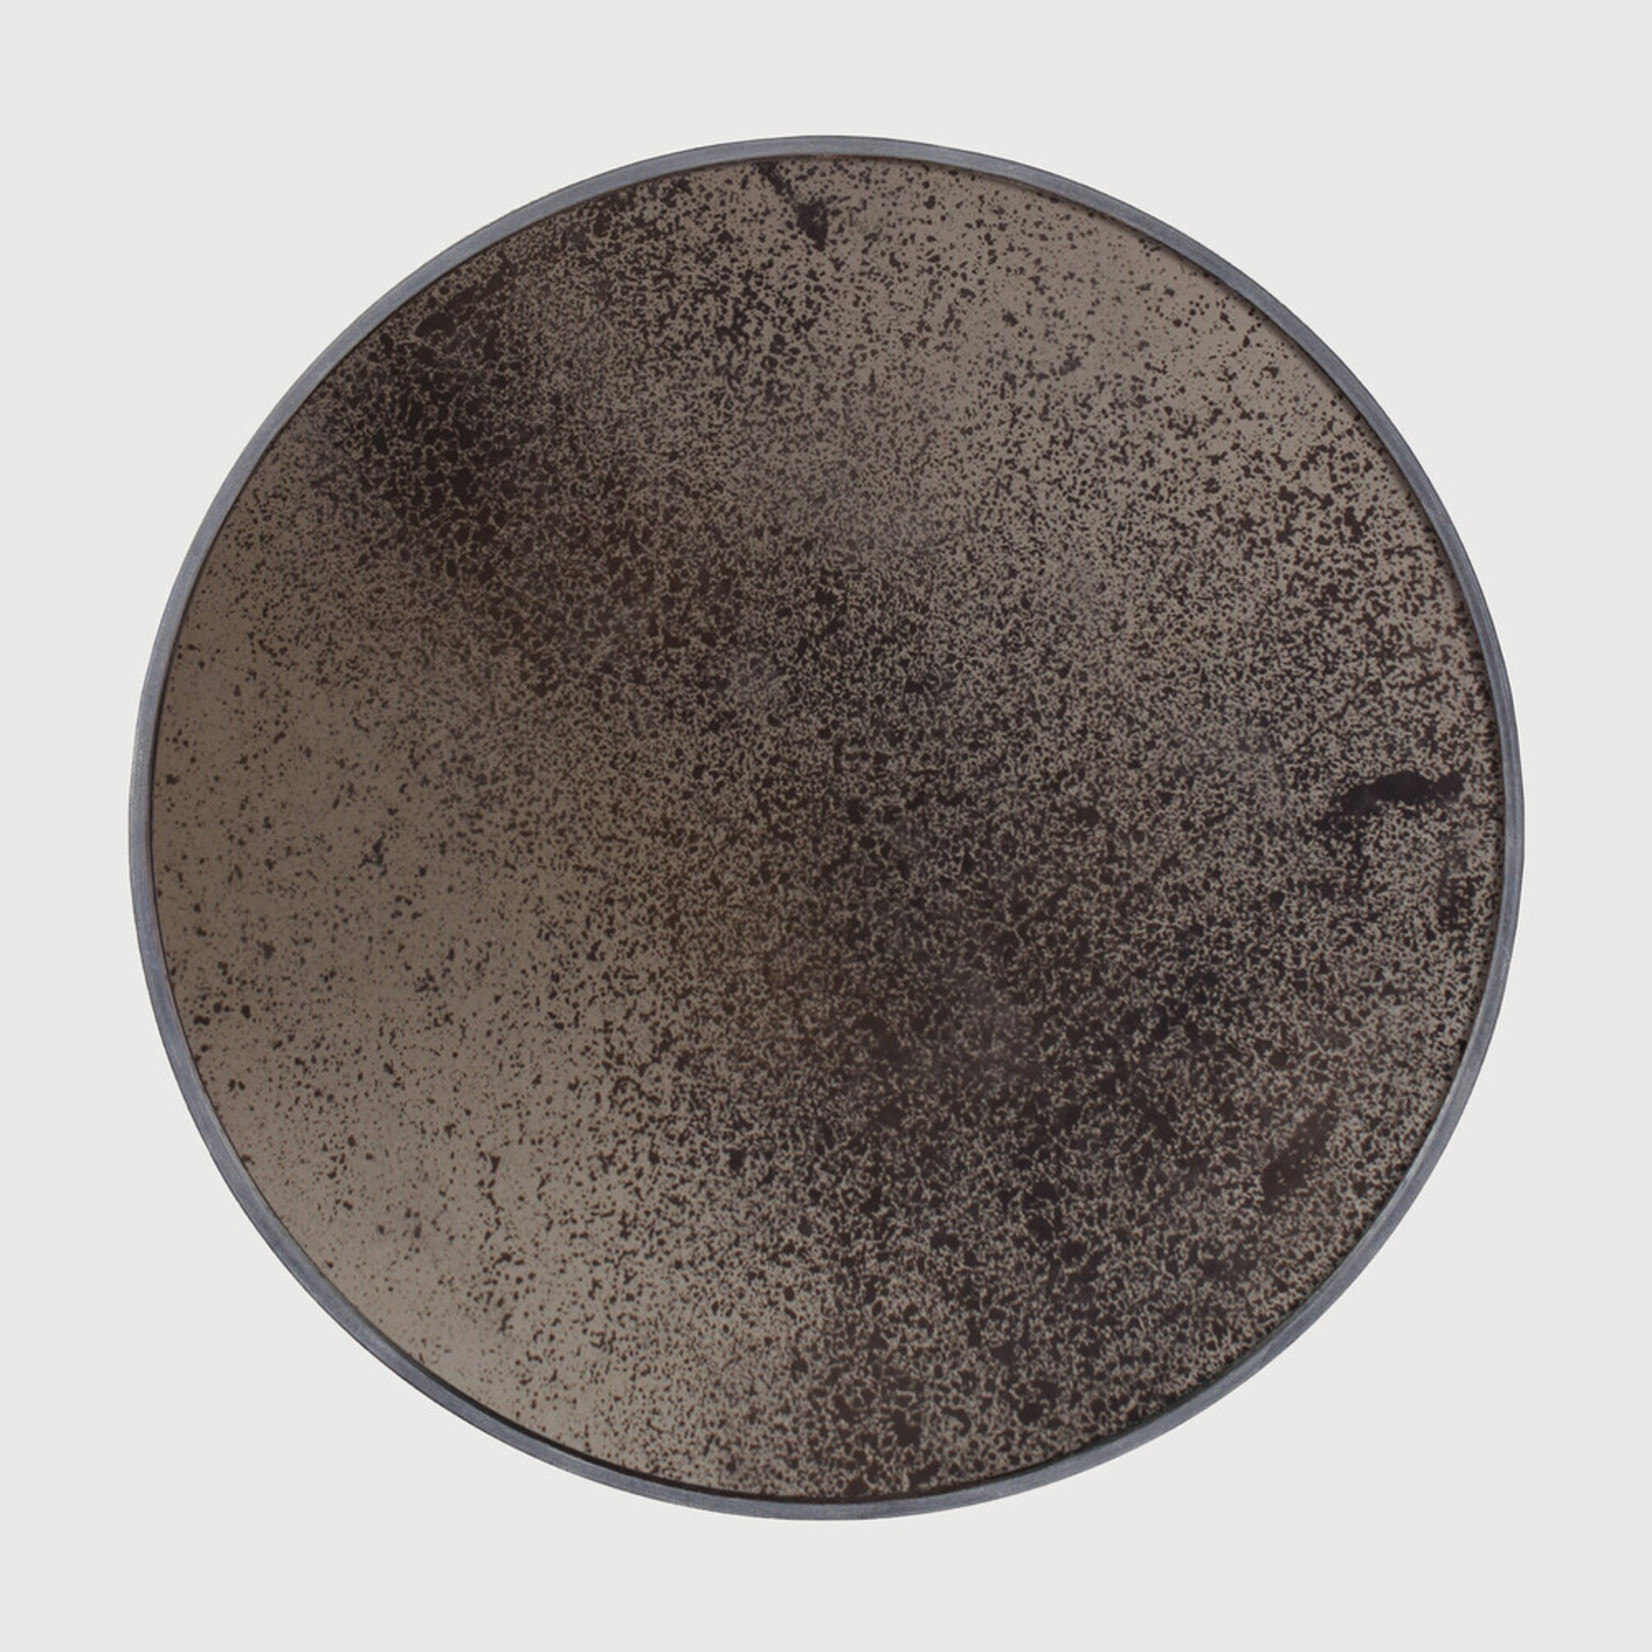 Ethnicraft Ethnicraft aged wall mirror bronze round 92x3 (20605)